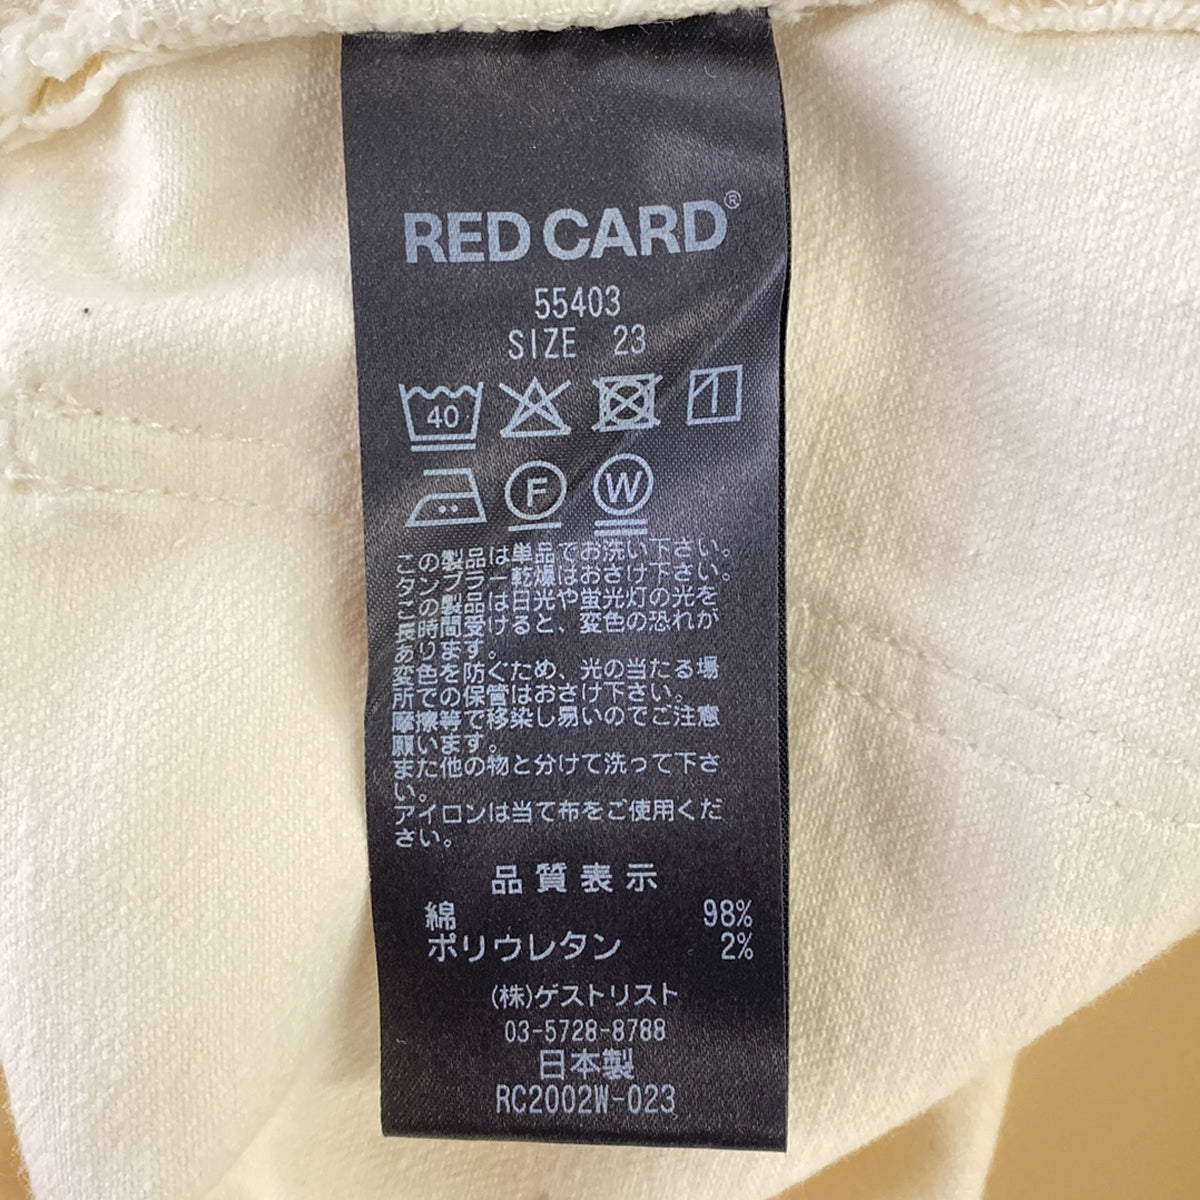 RED CARD / レッドカード | Anniversary / 55403 アニバーサリー デニムパンツ | 23 | ホワイト | レディース